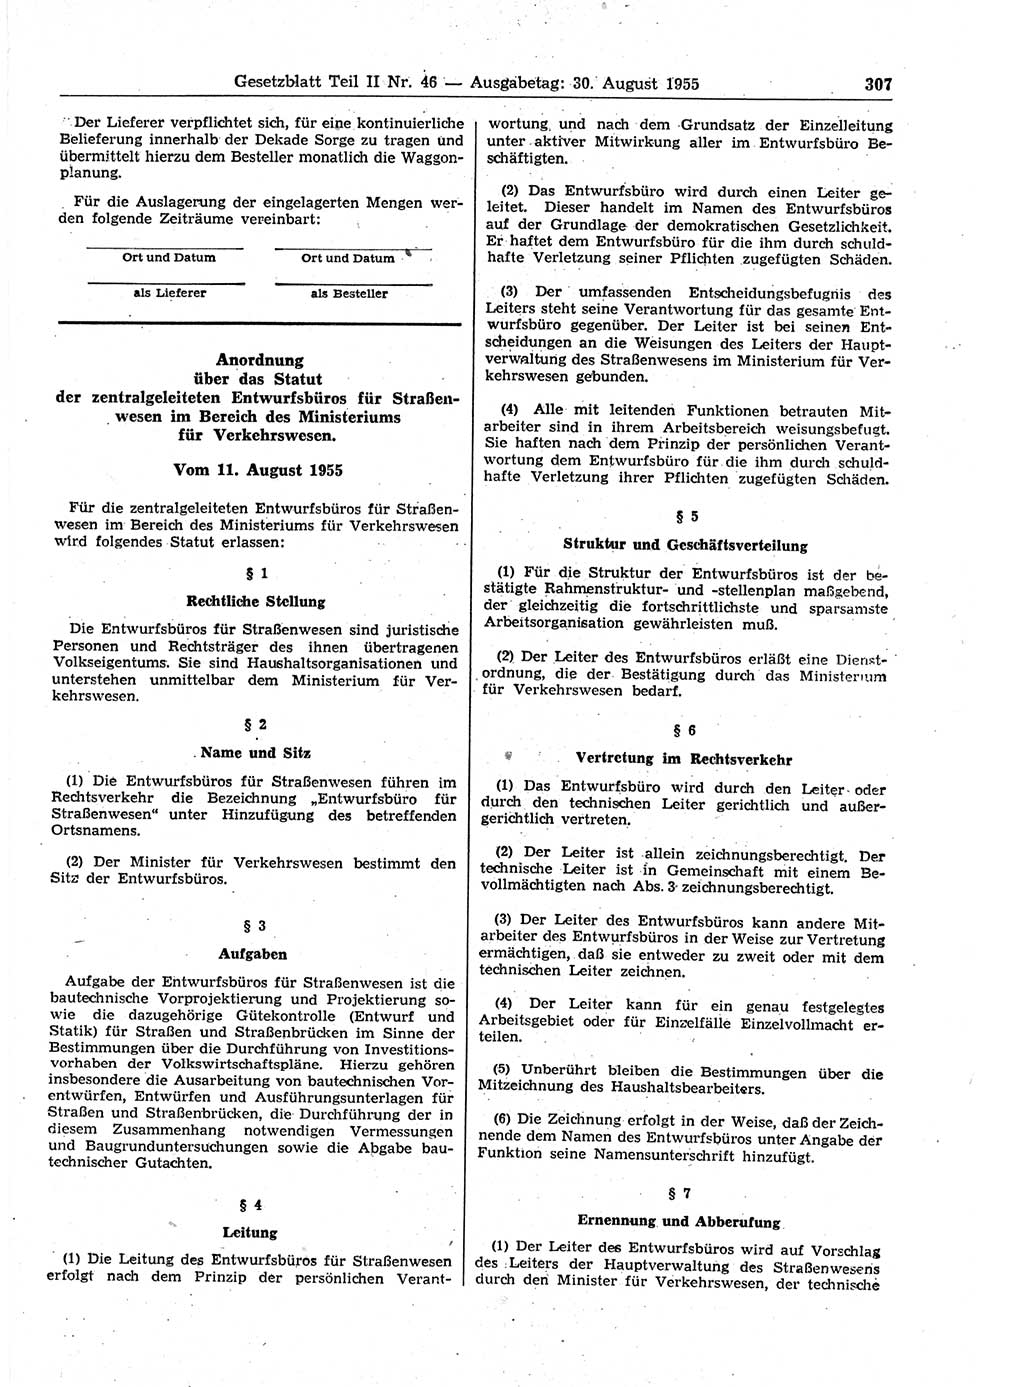 Gesetzblatt (GBl.) der Deutschen Demokratischen Republik (DDR) Teil ⅠⅠ 1955, Seite 307 (GBl. DDR ⅠⅠ 1955, S. 307)